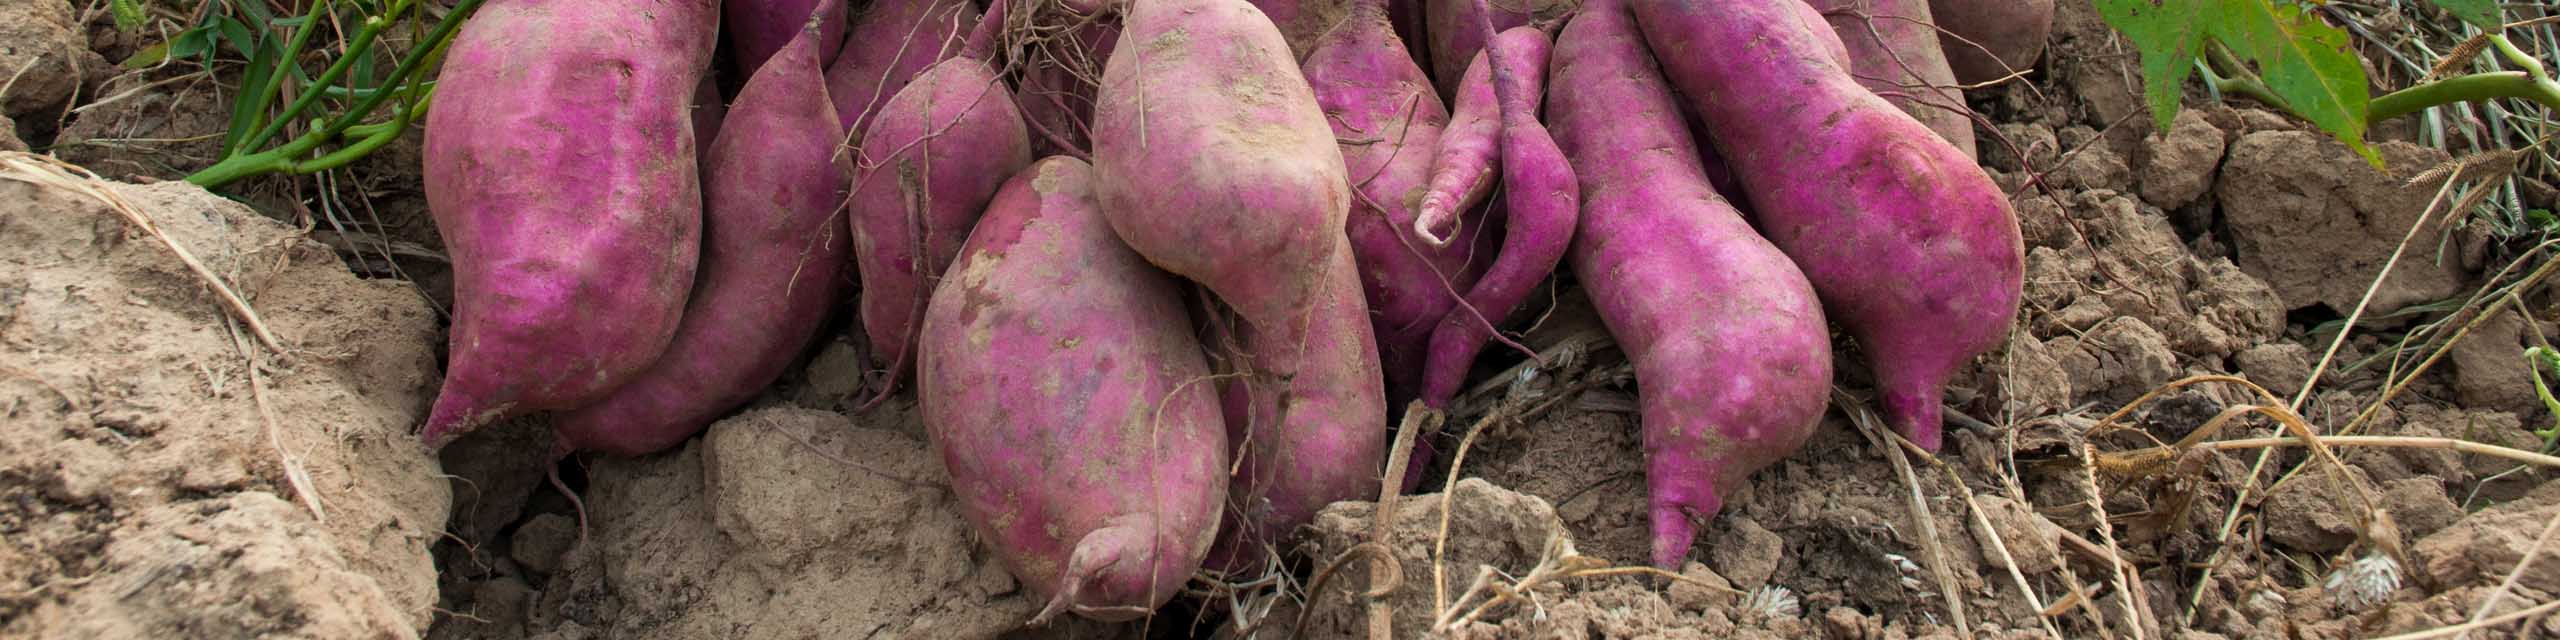 Freshly harvested purple sweet potatoes on garden soil.